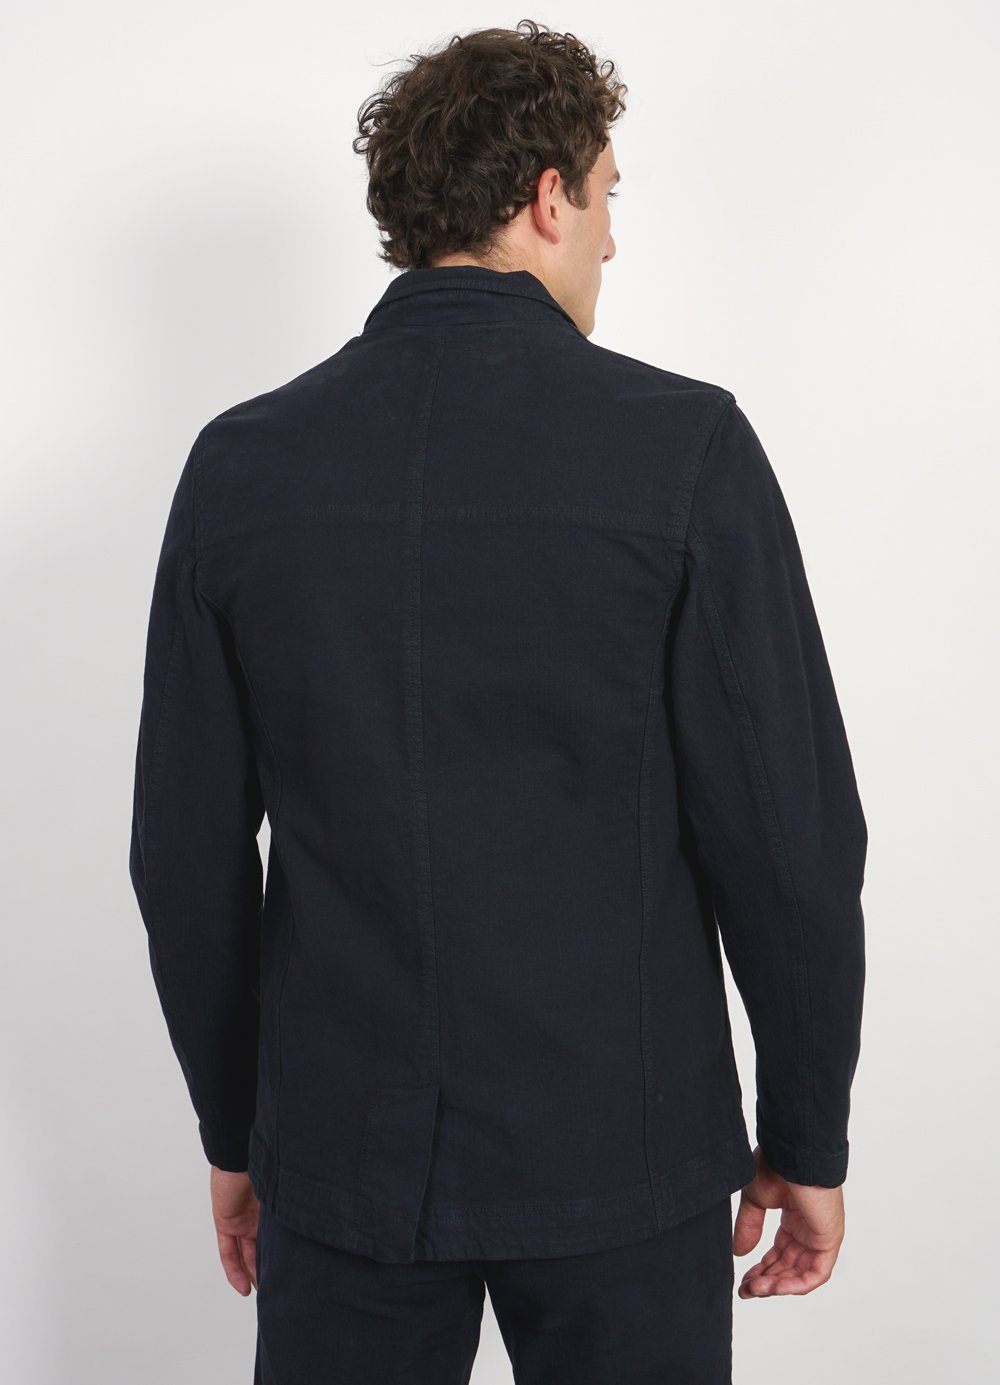 NICOLAI | Informal 4-button Blazer | Northsea -HANSEN Garments- HANSEN Garments